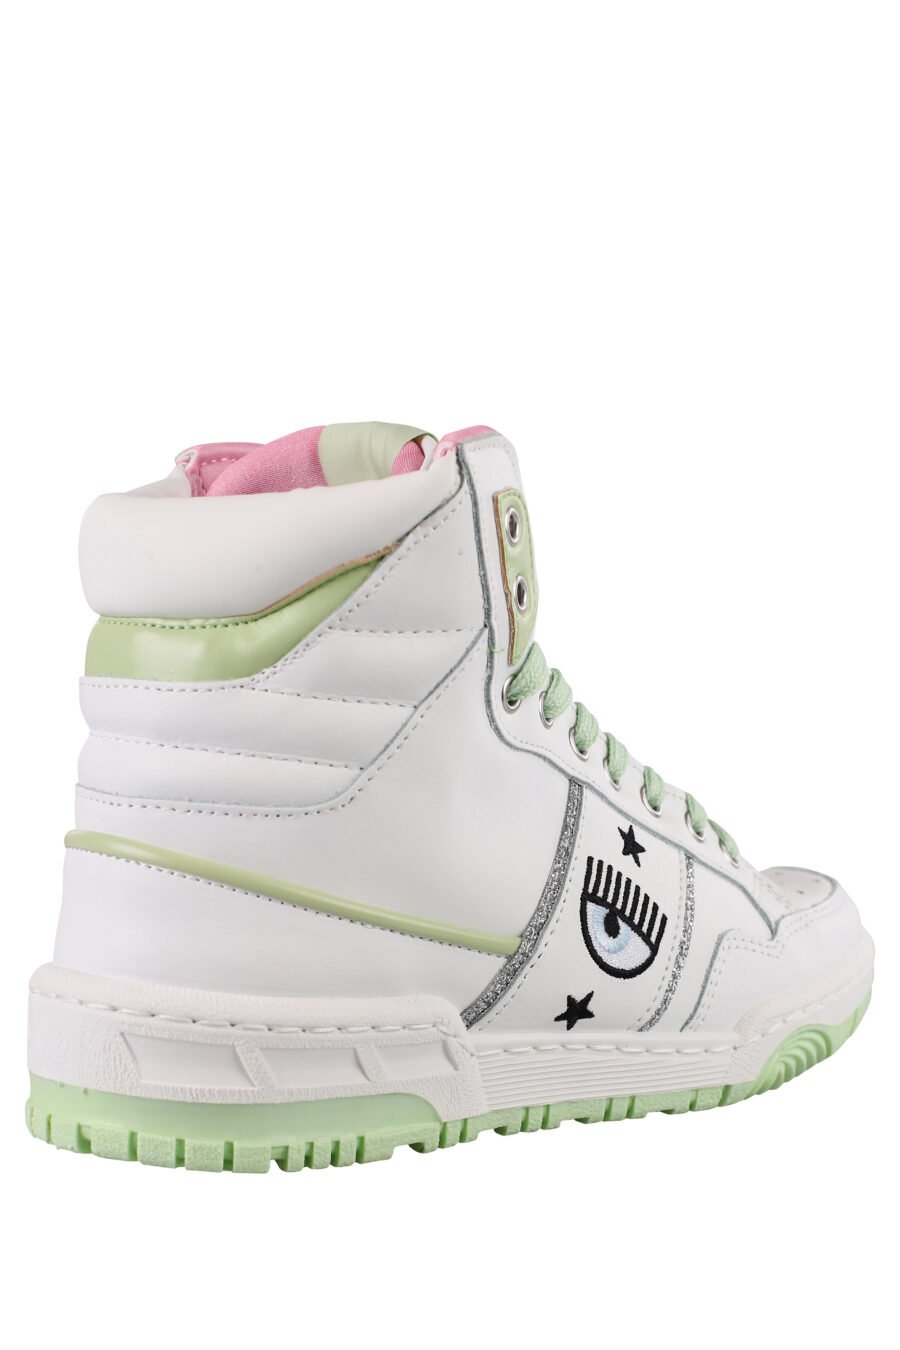 Weiße und grüne Turnschuhe mit Augenlogo und rosa Details - IMG 1169